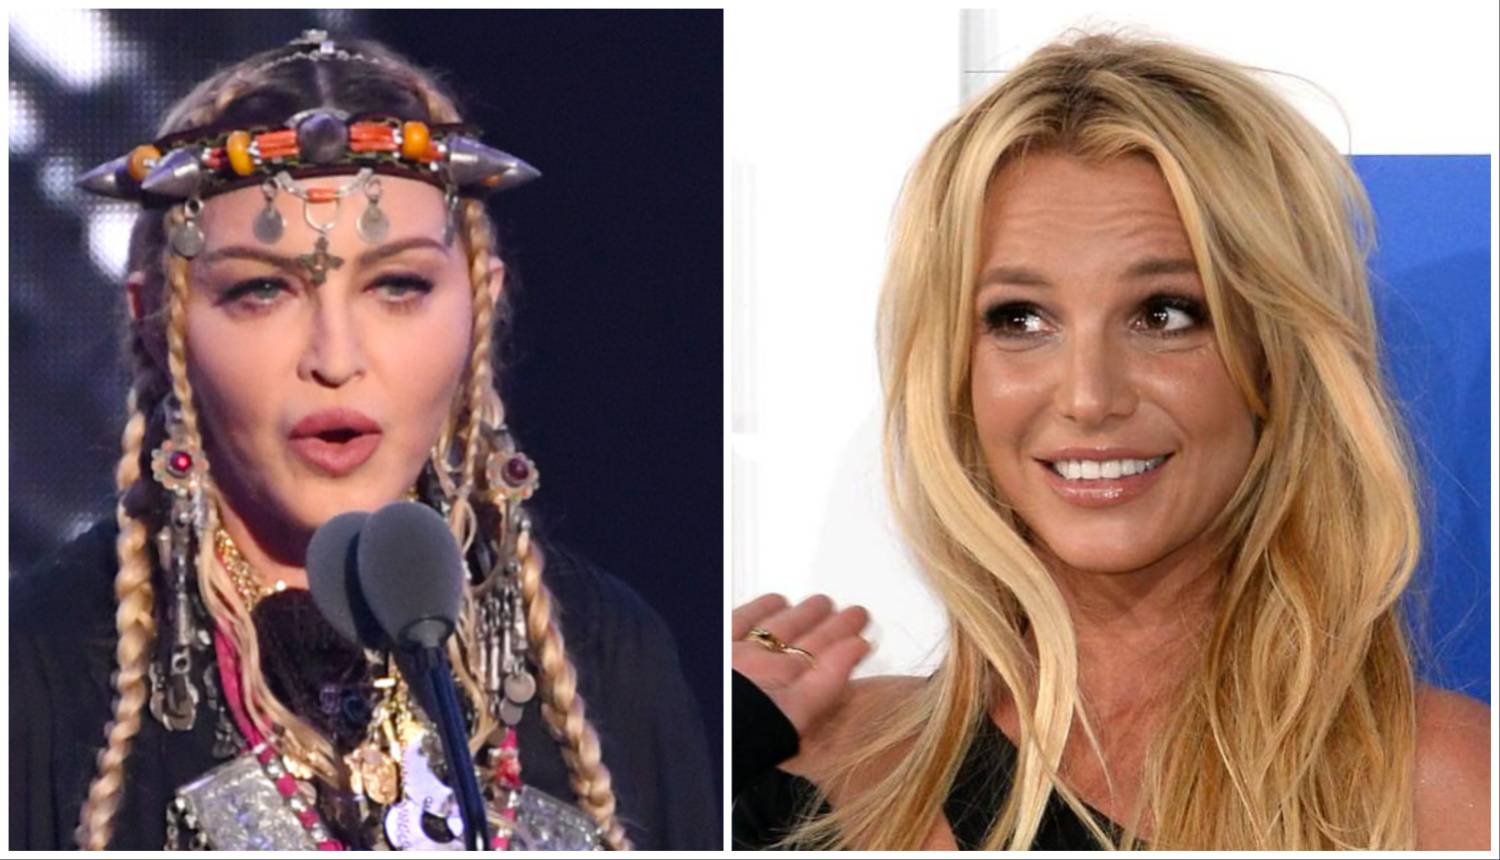 Svi pamte njihov poljubac, sada Madonna želi opet nastupati s Britney: 'Dugo su prijateljice'